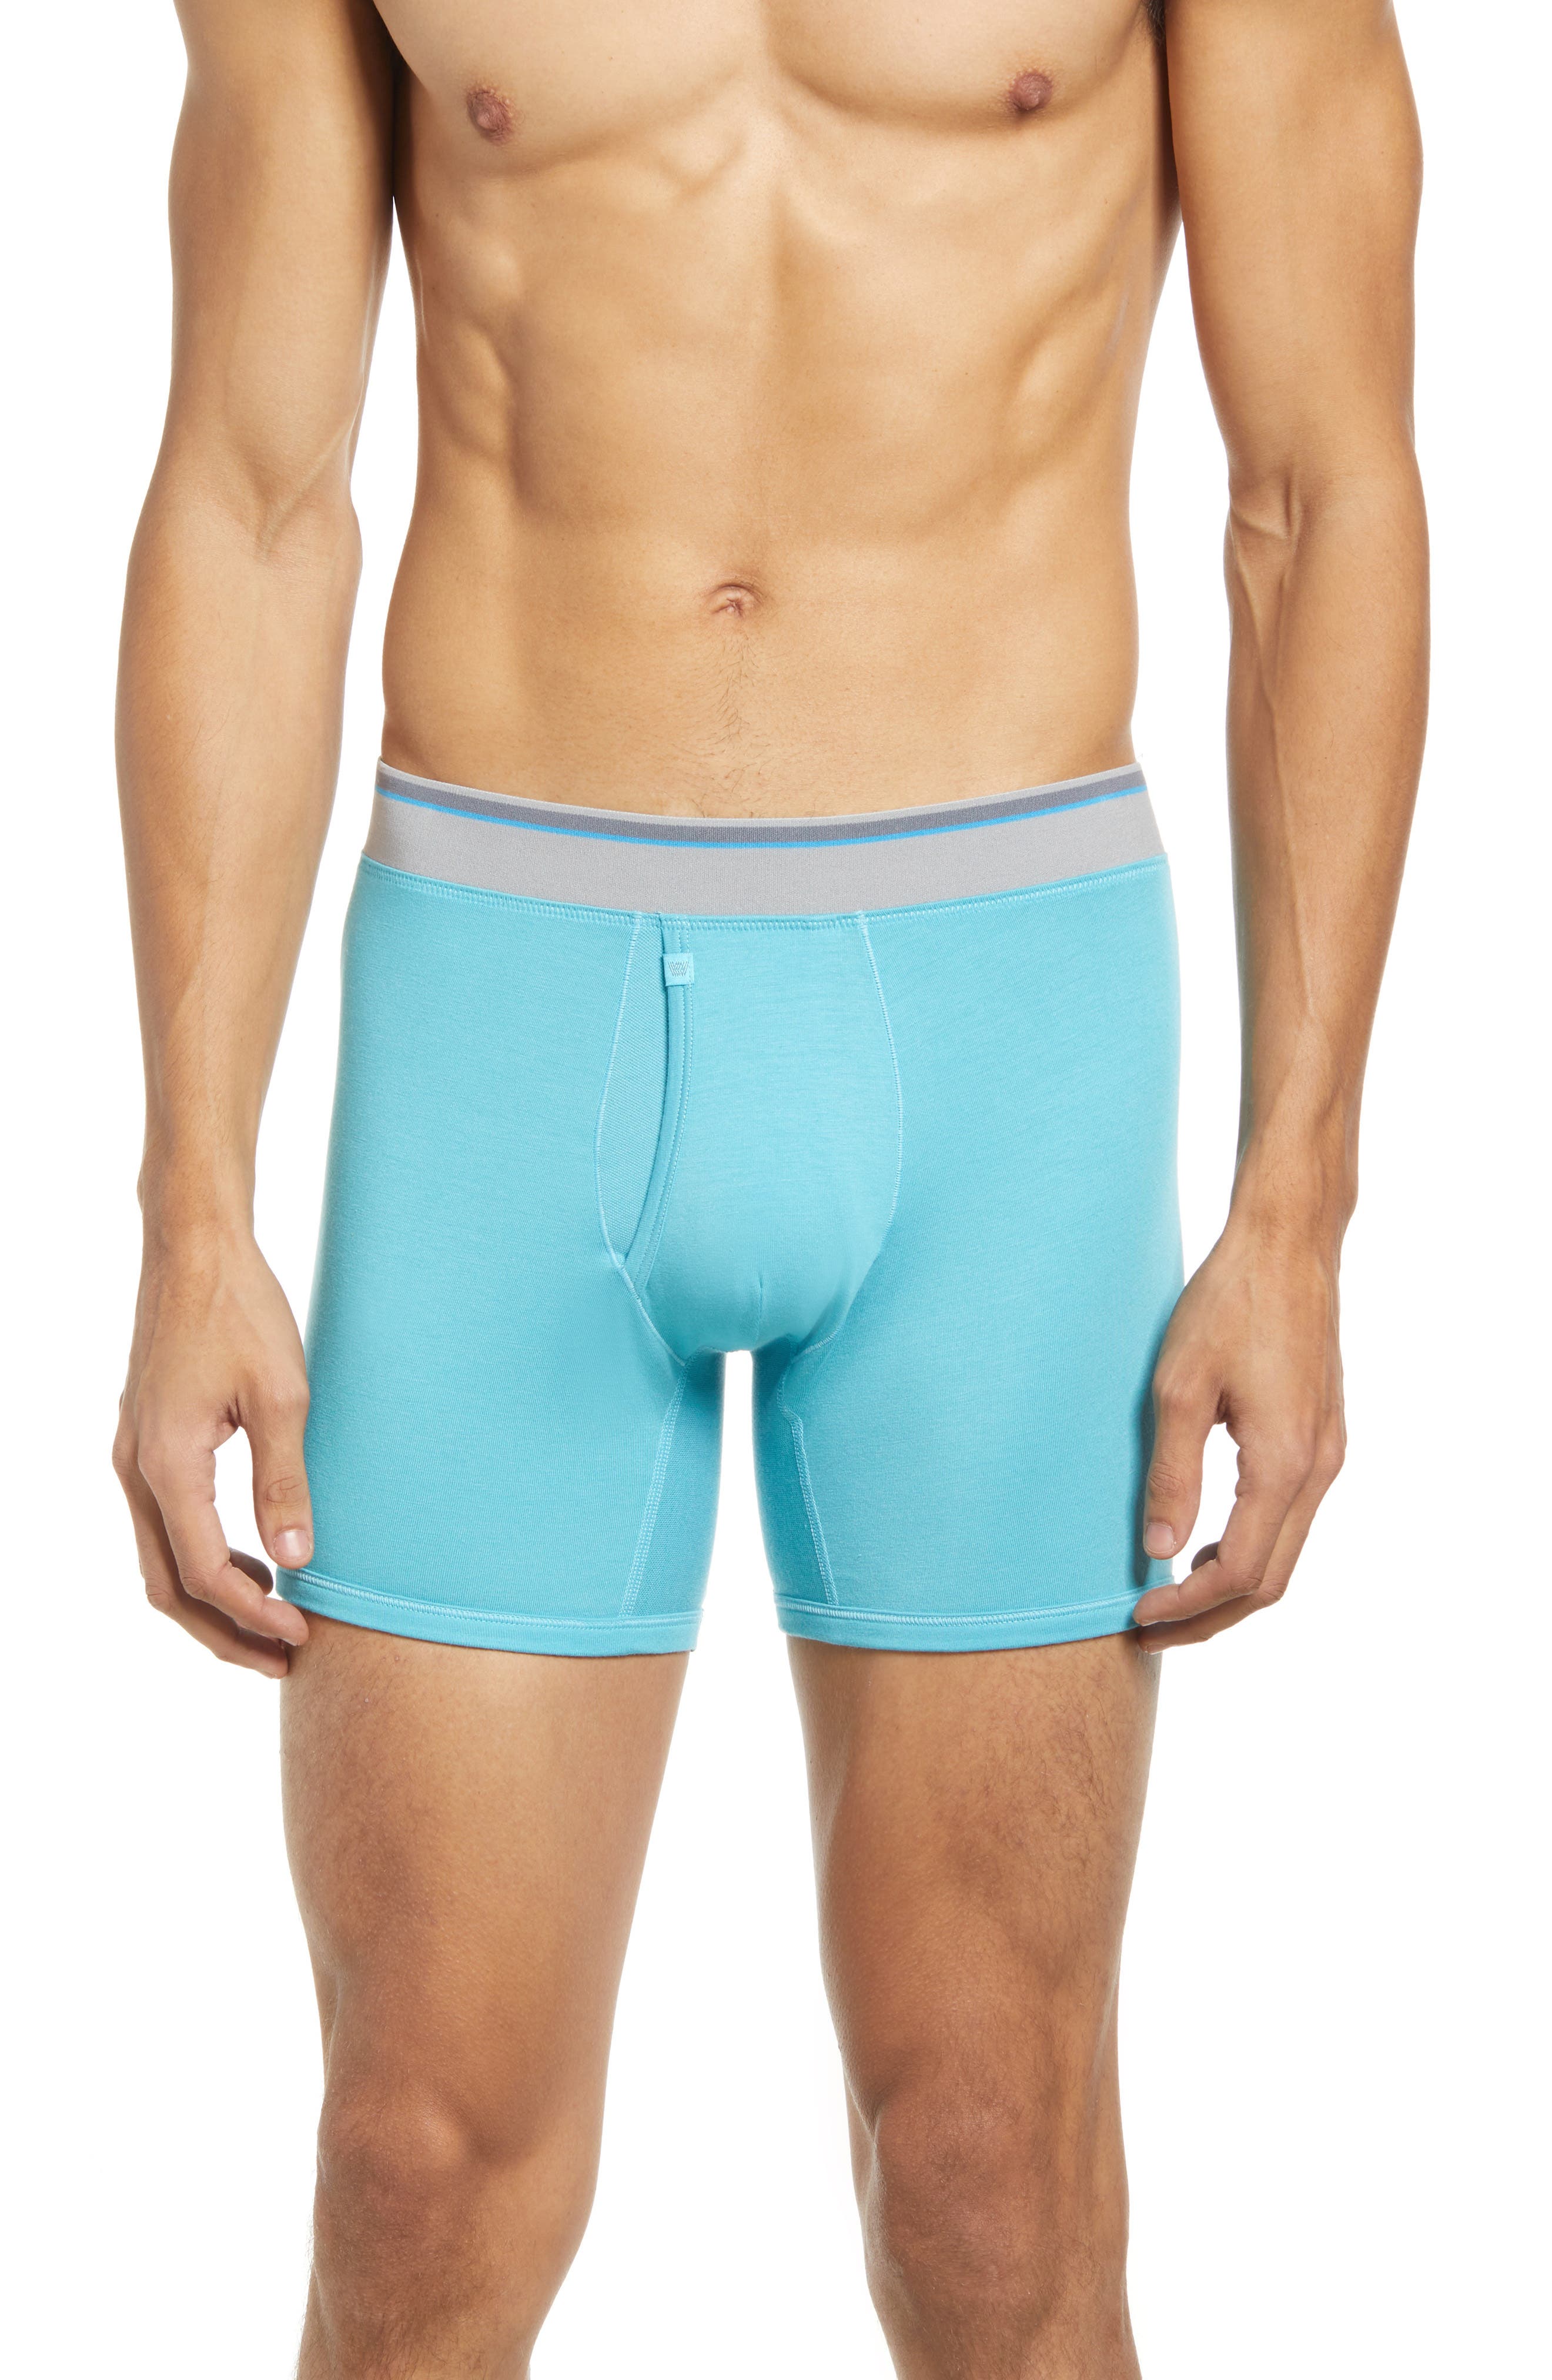 SHRGRGR Mens Underwear Tropical Blue Leaves Boxer Briefs Short Underpants 